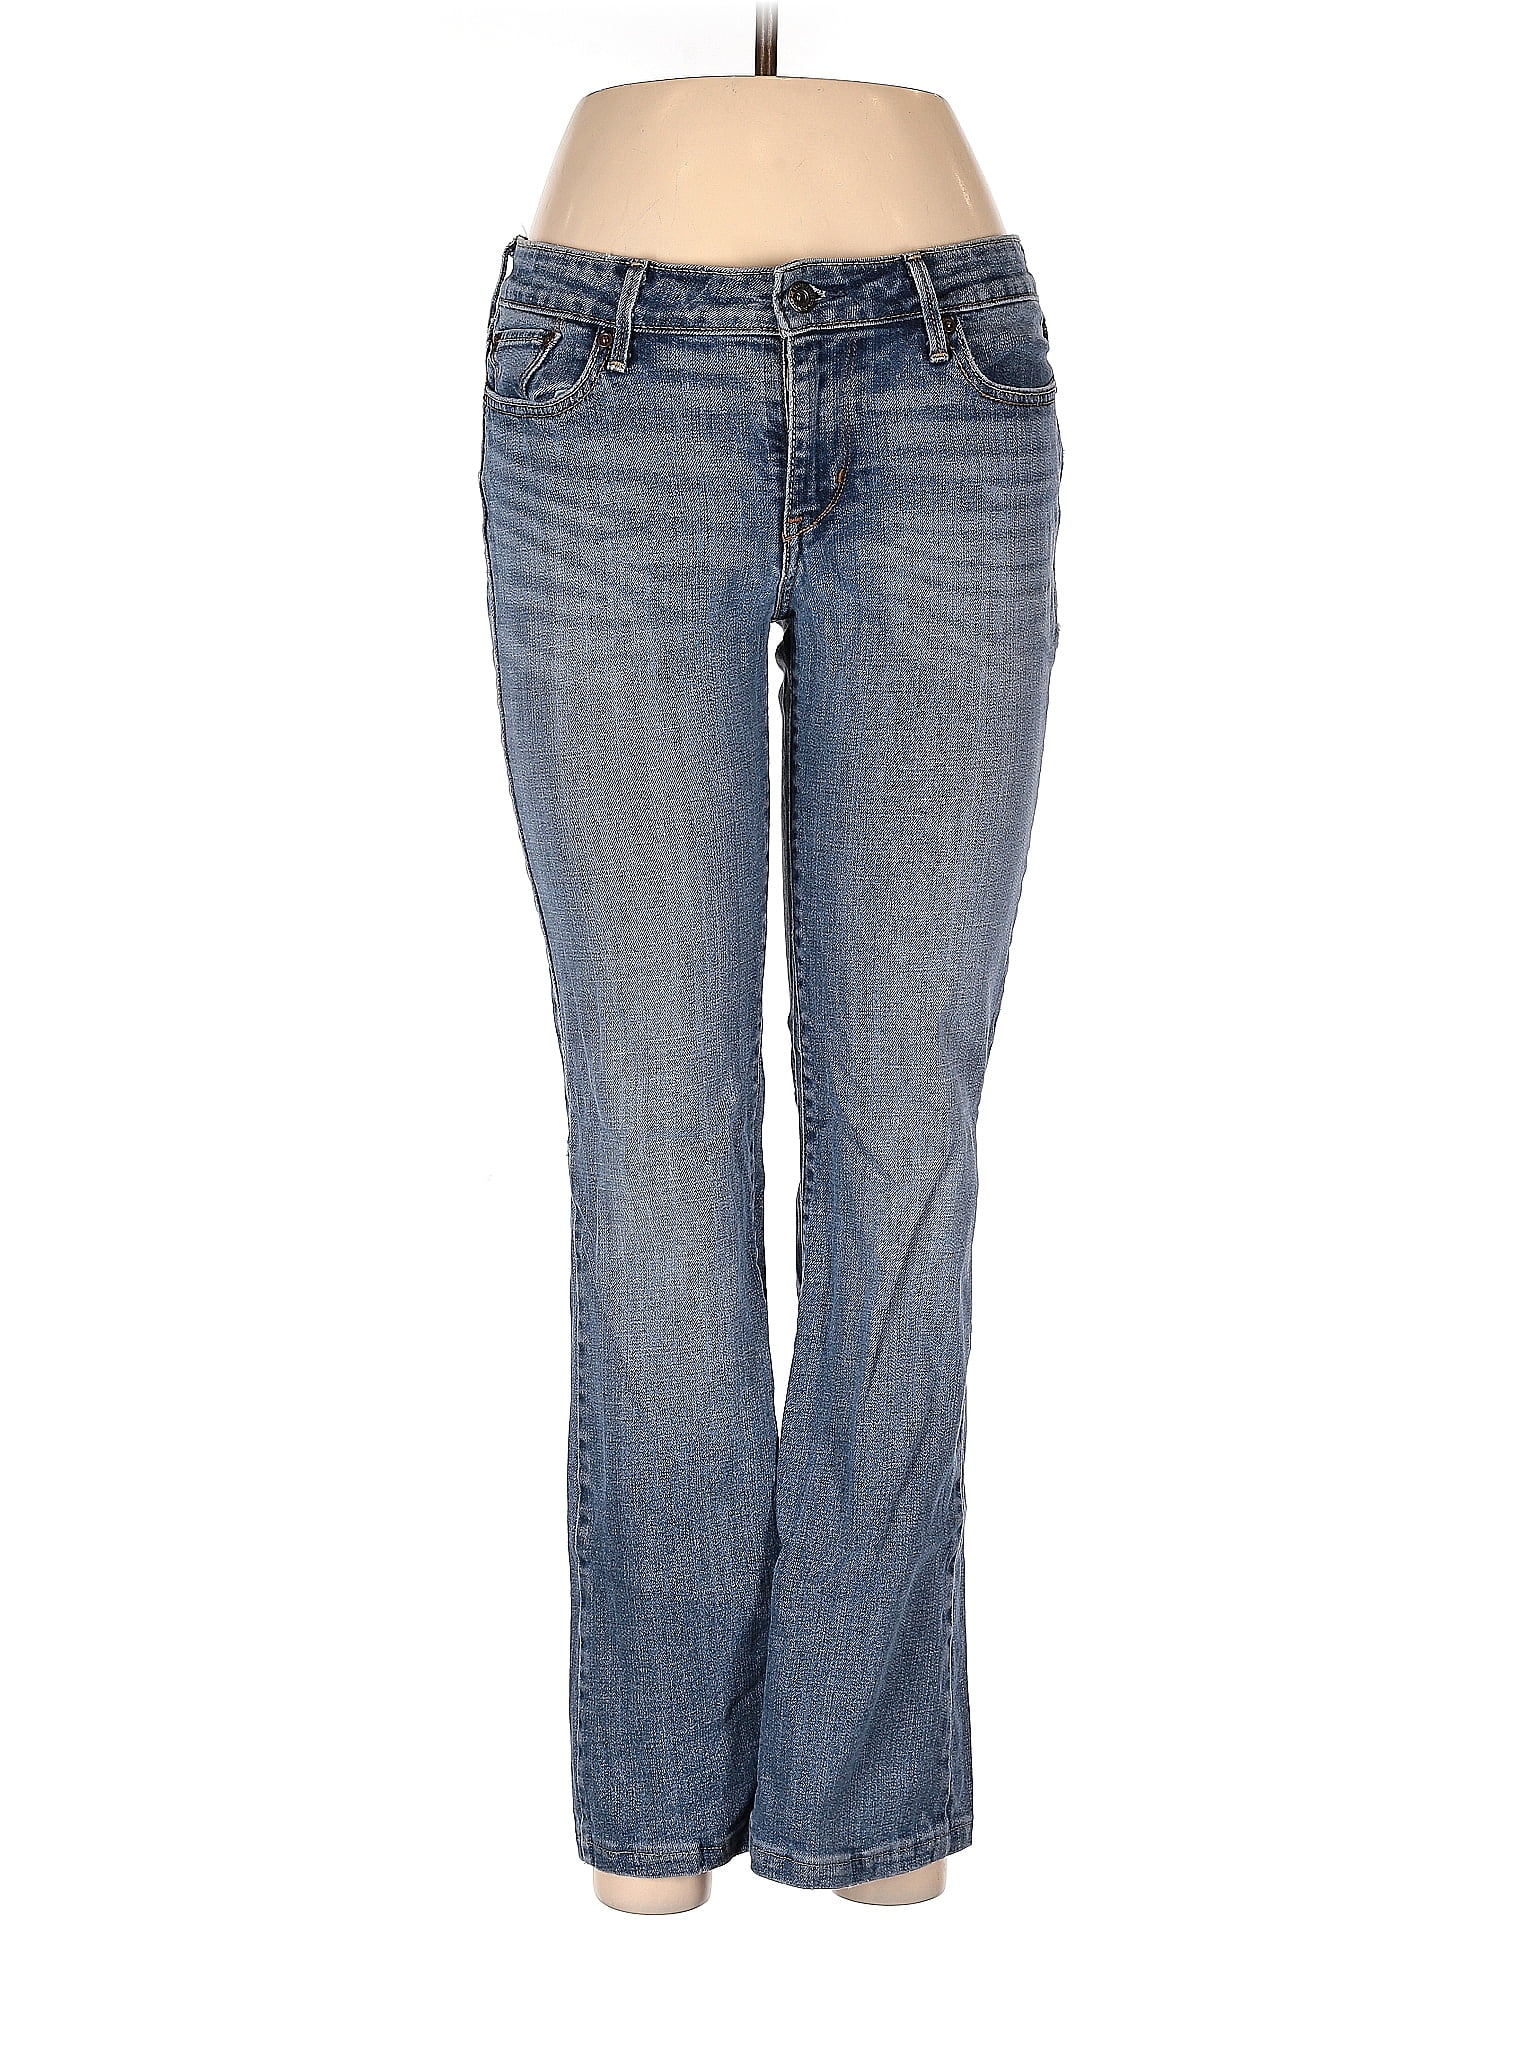 Lee Solid Blue Jeans Size 6 - 57% off | thredUP